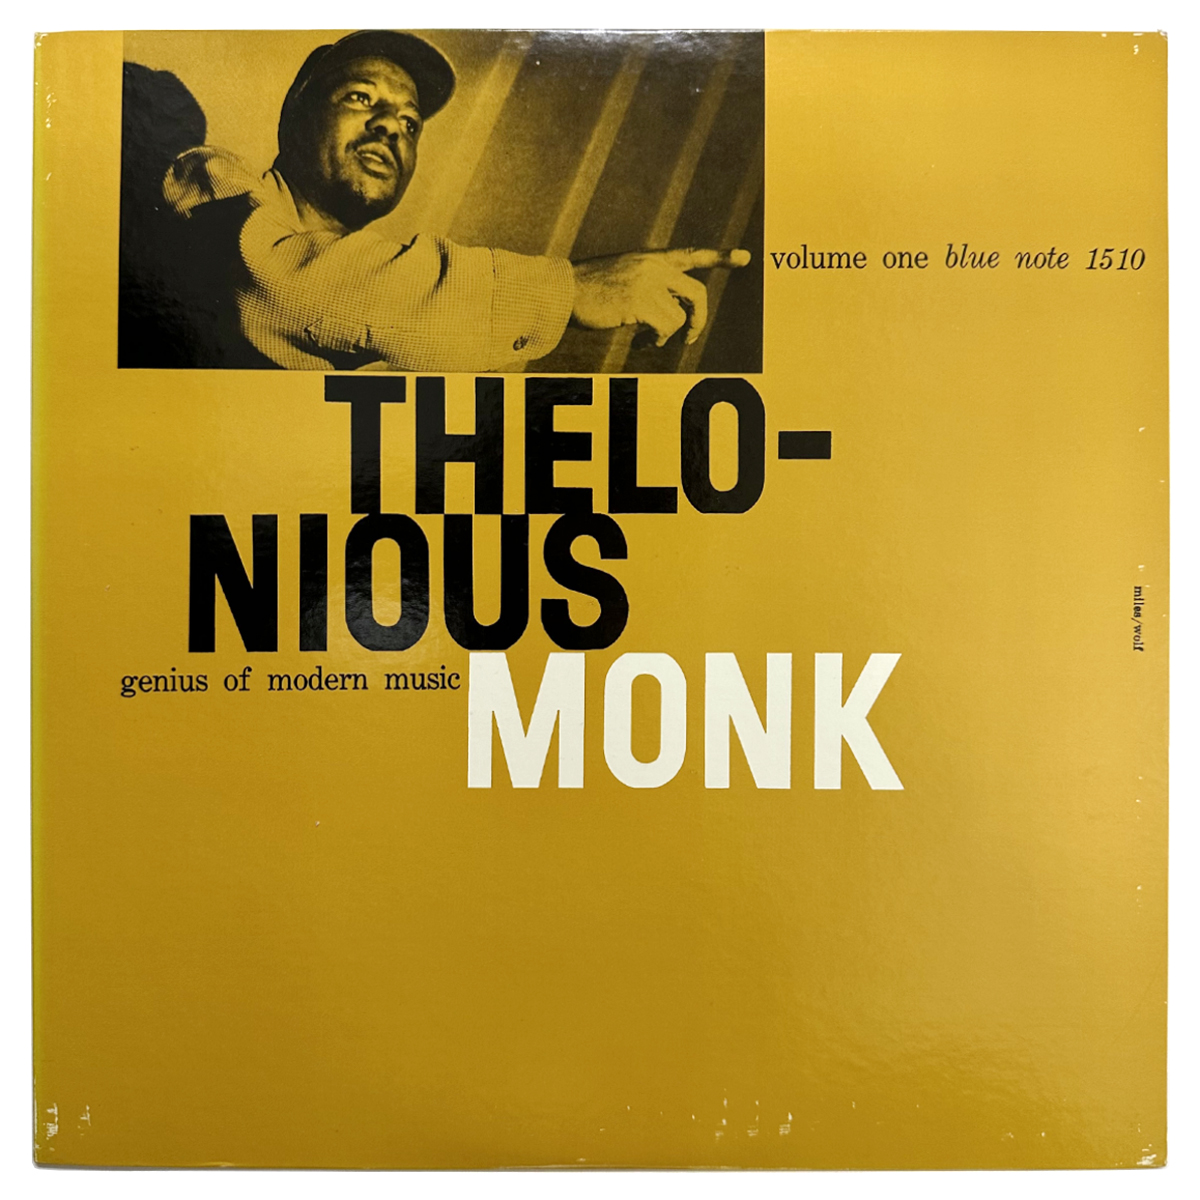 セロニアス モンク(THELONIOUS MONK) Genius Of Modern Music GXF3014(M) 国内盤 キング盤 ライナー付き